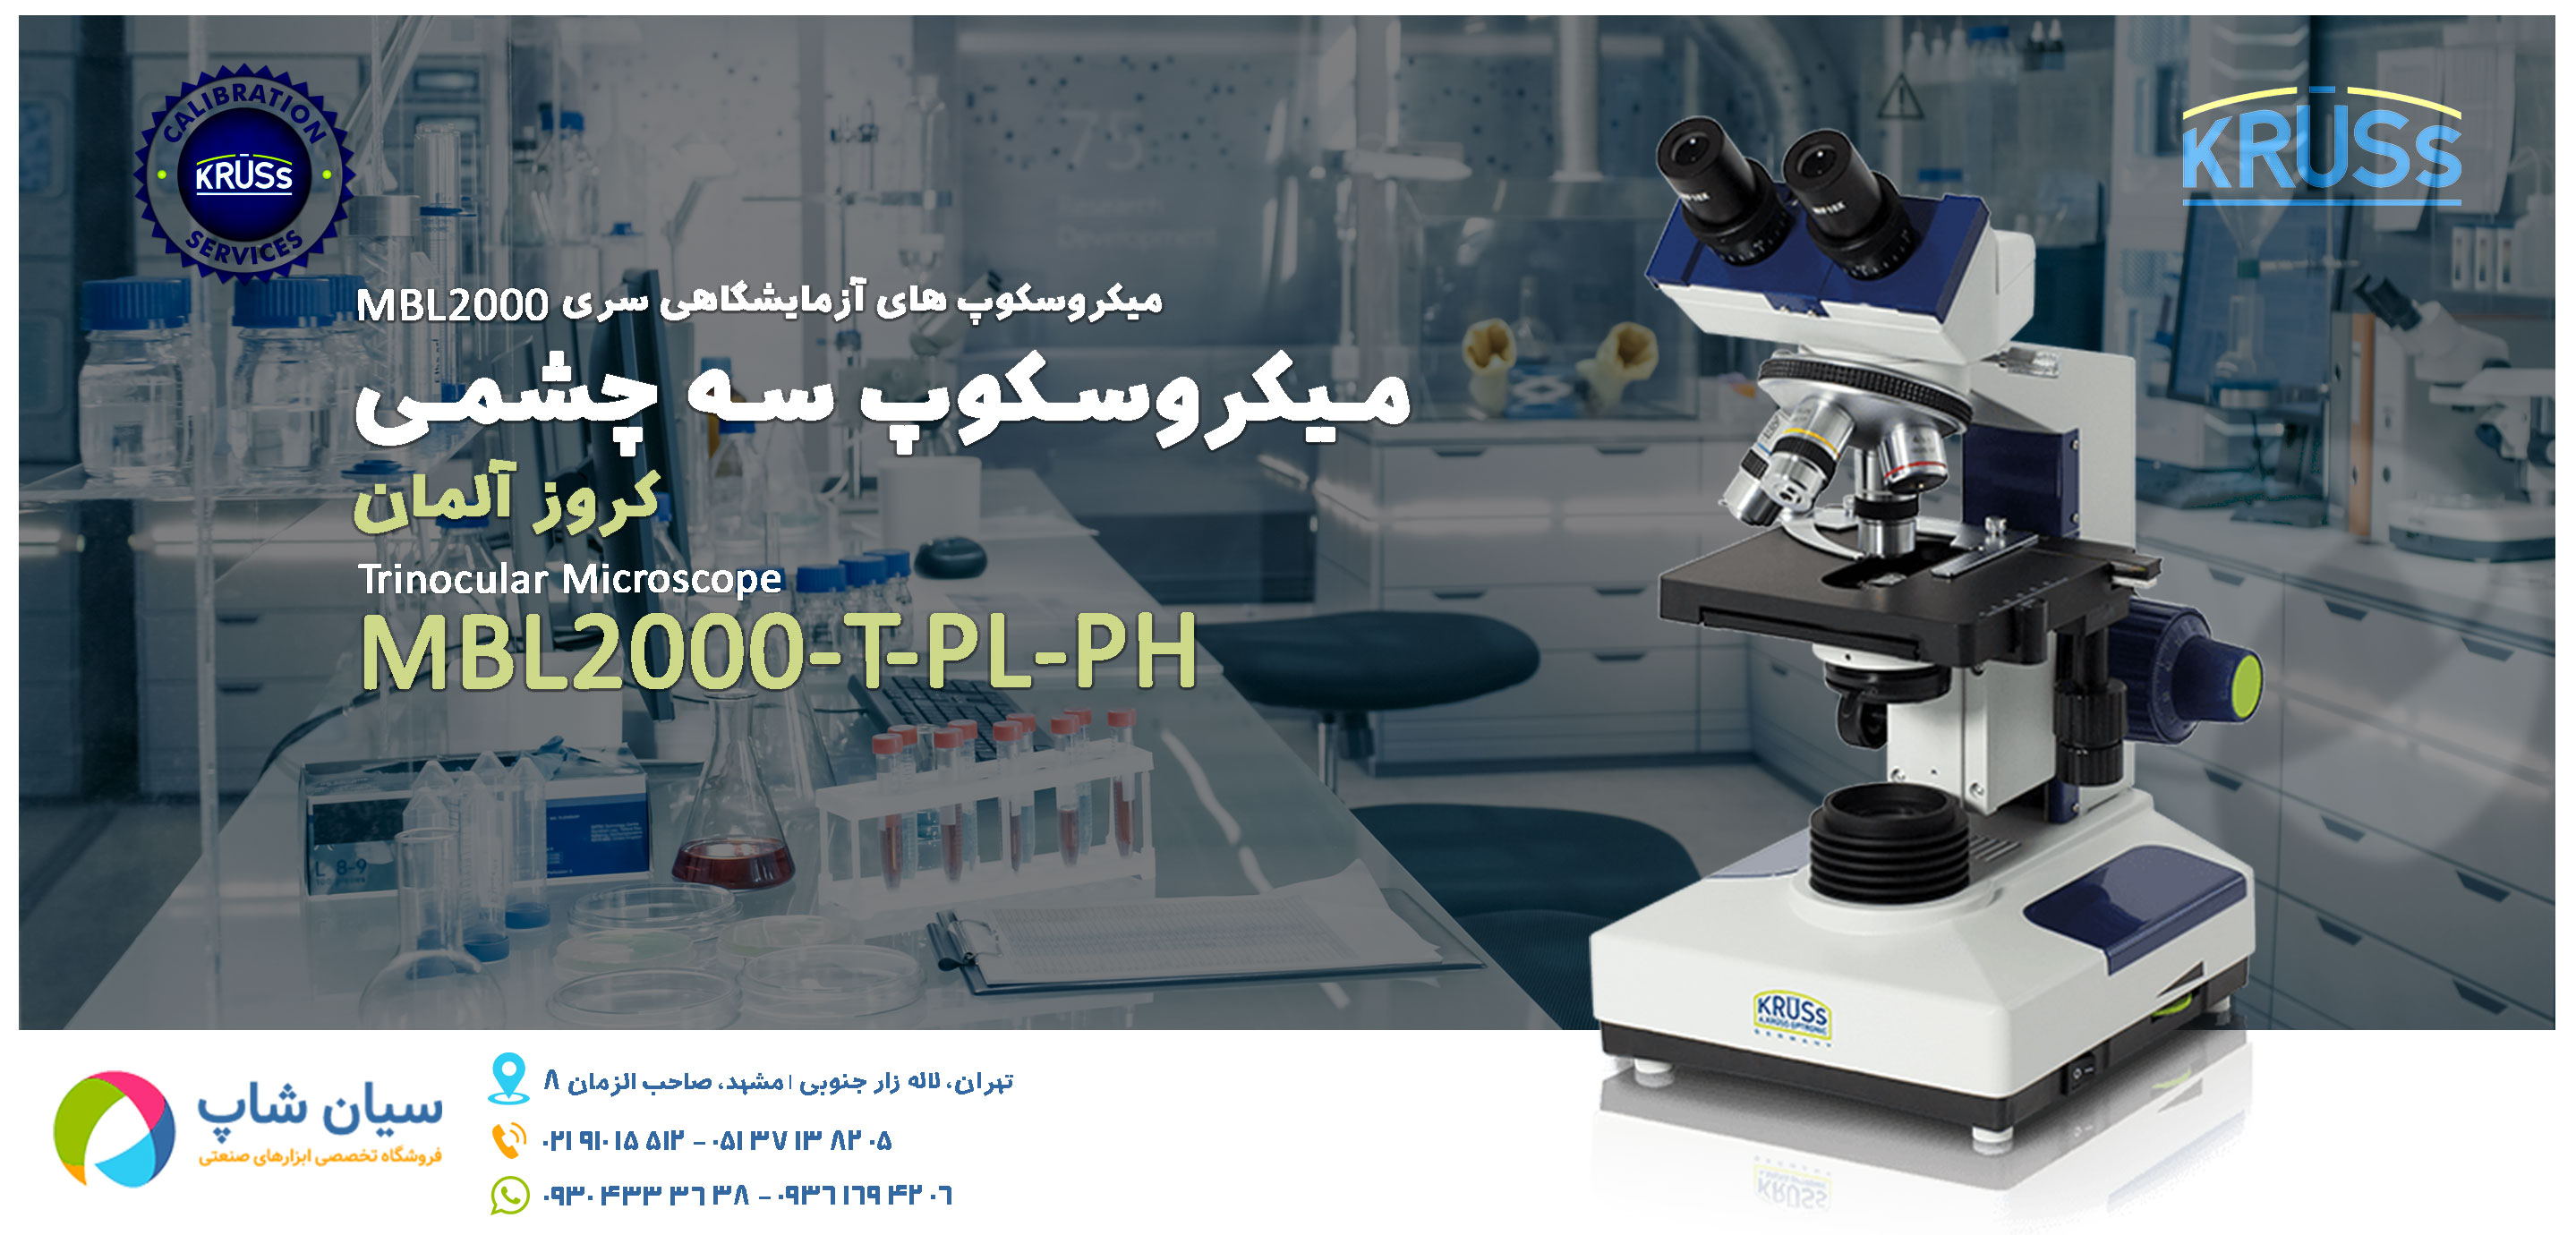 میکروسکوپ سه چشمی دیجیتال KRUSS MBL2000-T-PL-PH